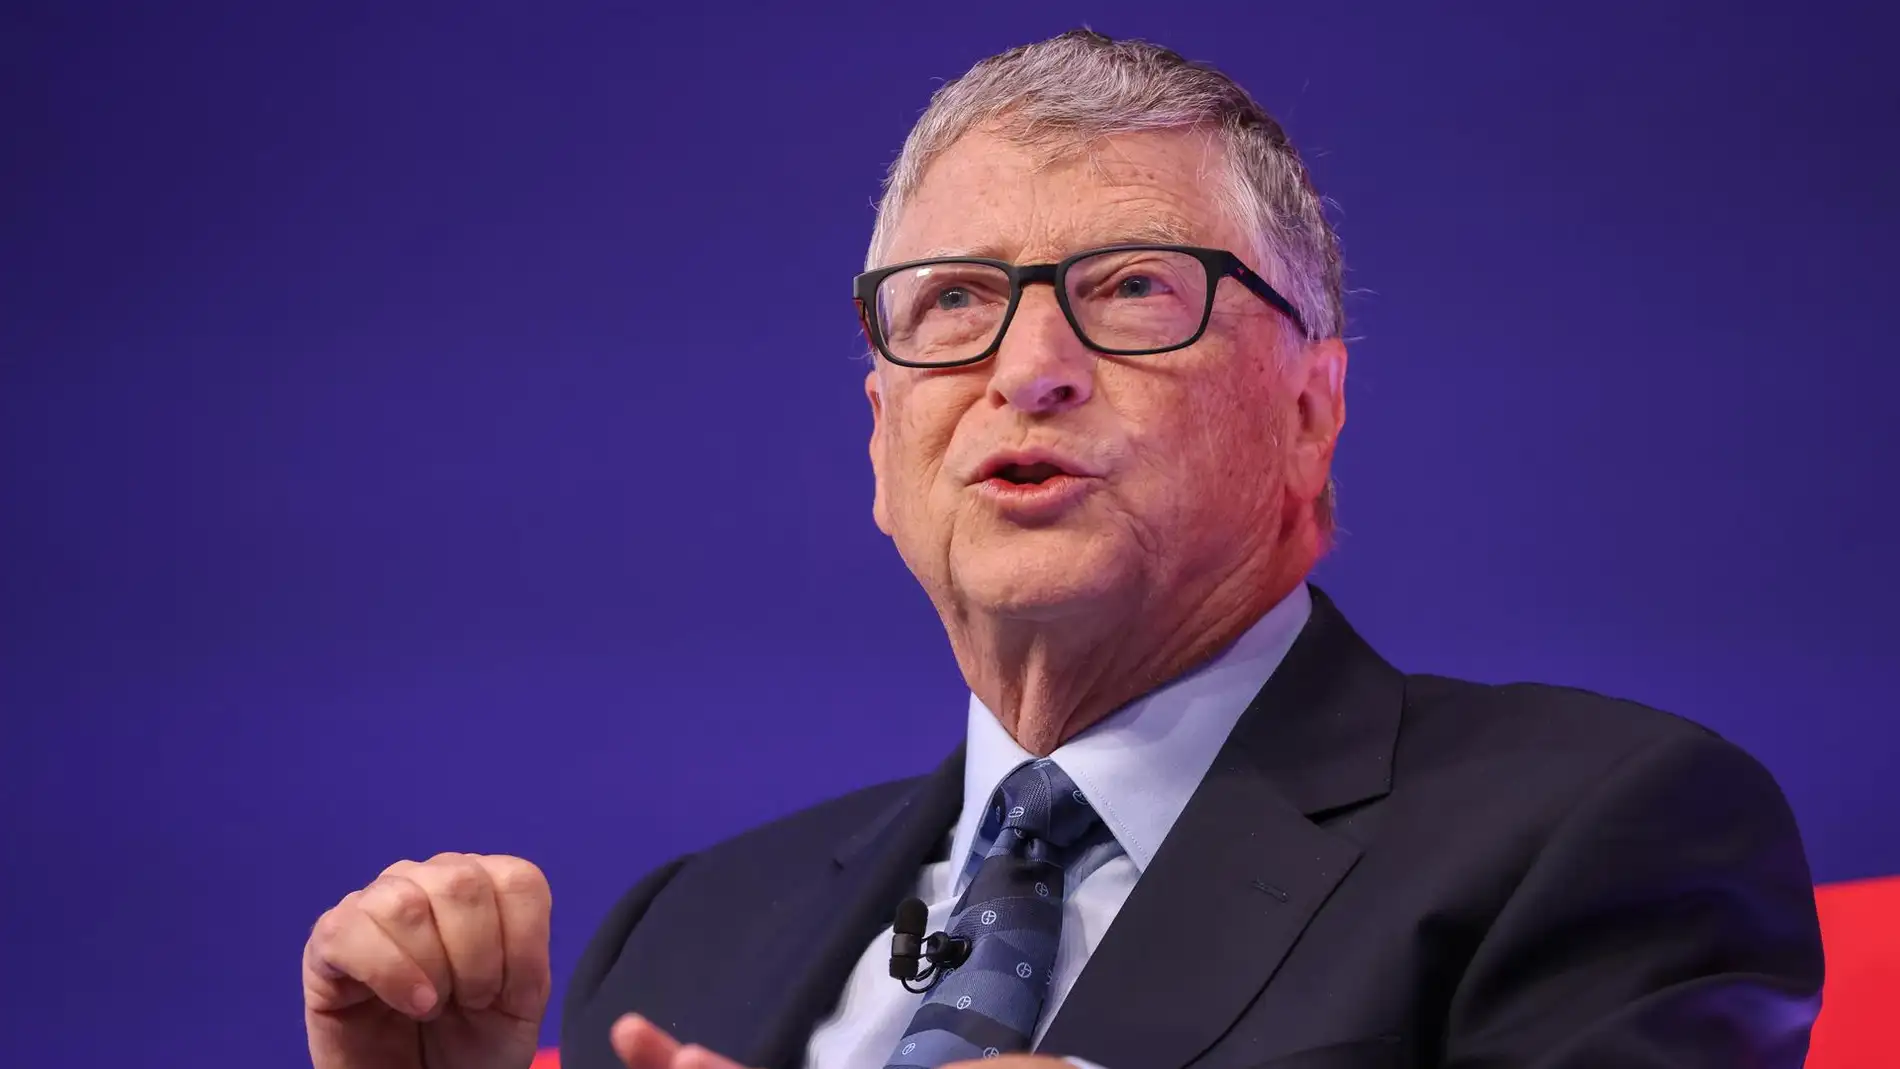 Bill Gates pronostica un "cambio de reglas" decisivo para la humanidad